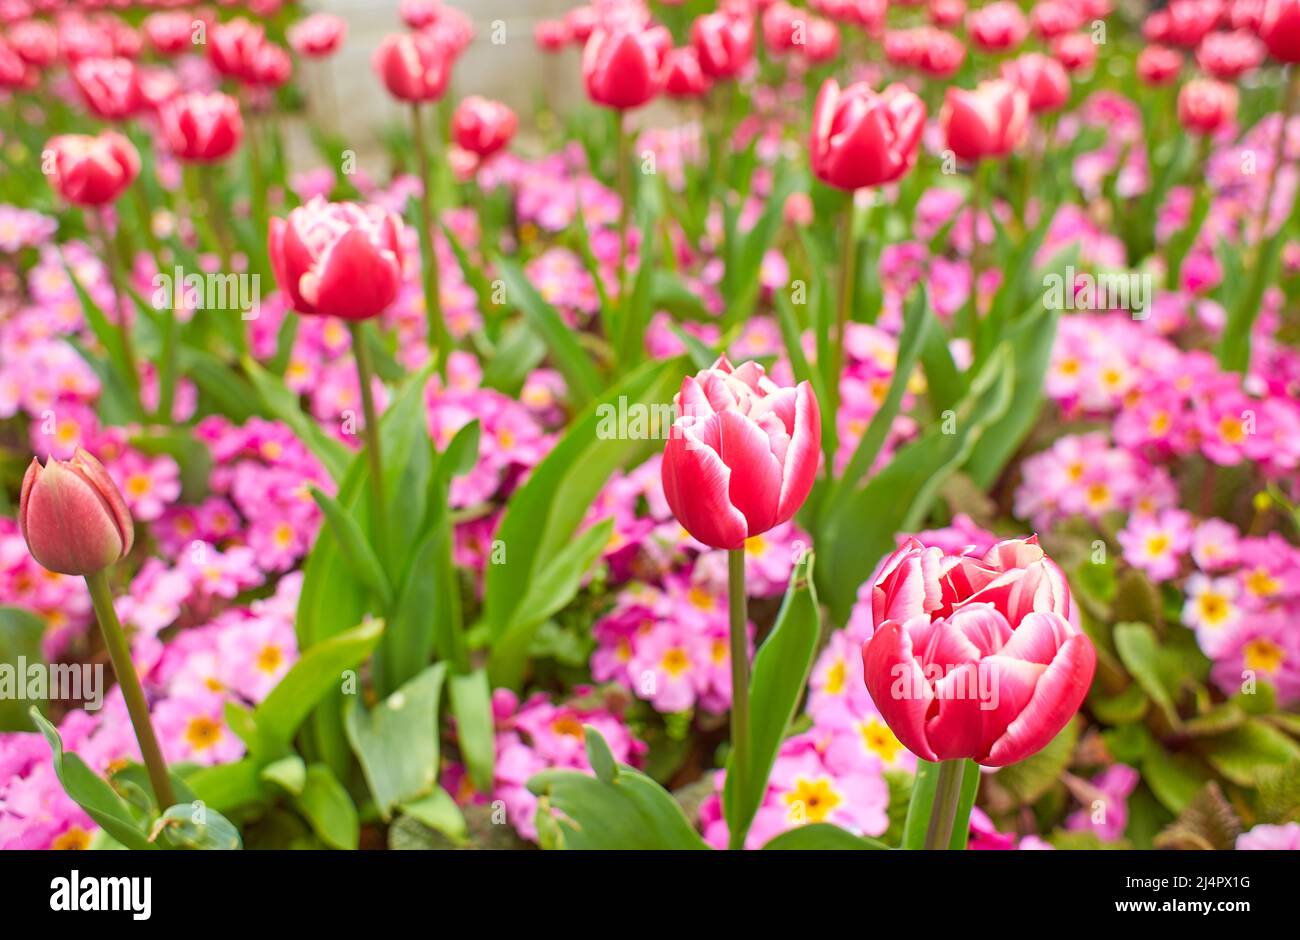 Des tulipes roses vives, rouges avec des feuilles vertes fleurissent dans un jardin en un jour de printemps, un magnifique fond floral extérieur photographié avec une mise au point douce. Banque D'Images